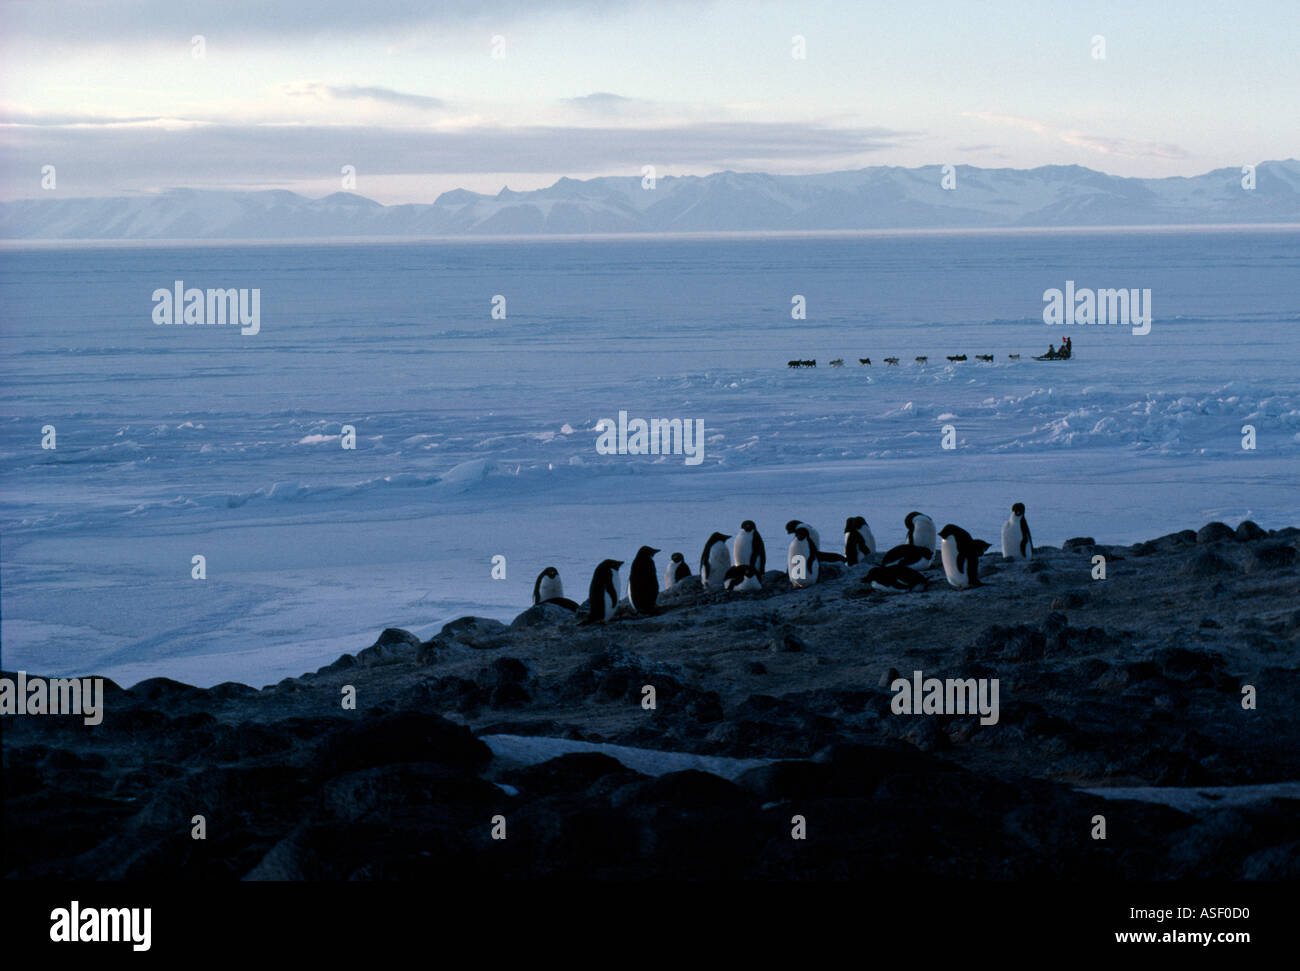 Team der Huskies ziehen Schlitten auf schnelle Meereis vor Adelie Pinguin-Kolonie Kap Royds Ross Insel Antarktis Frühjahr Stockfoto